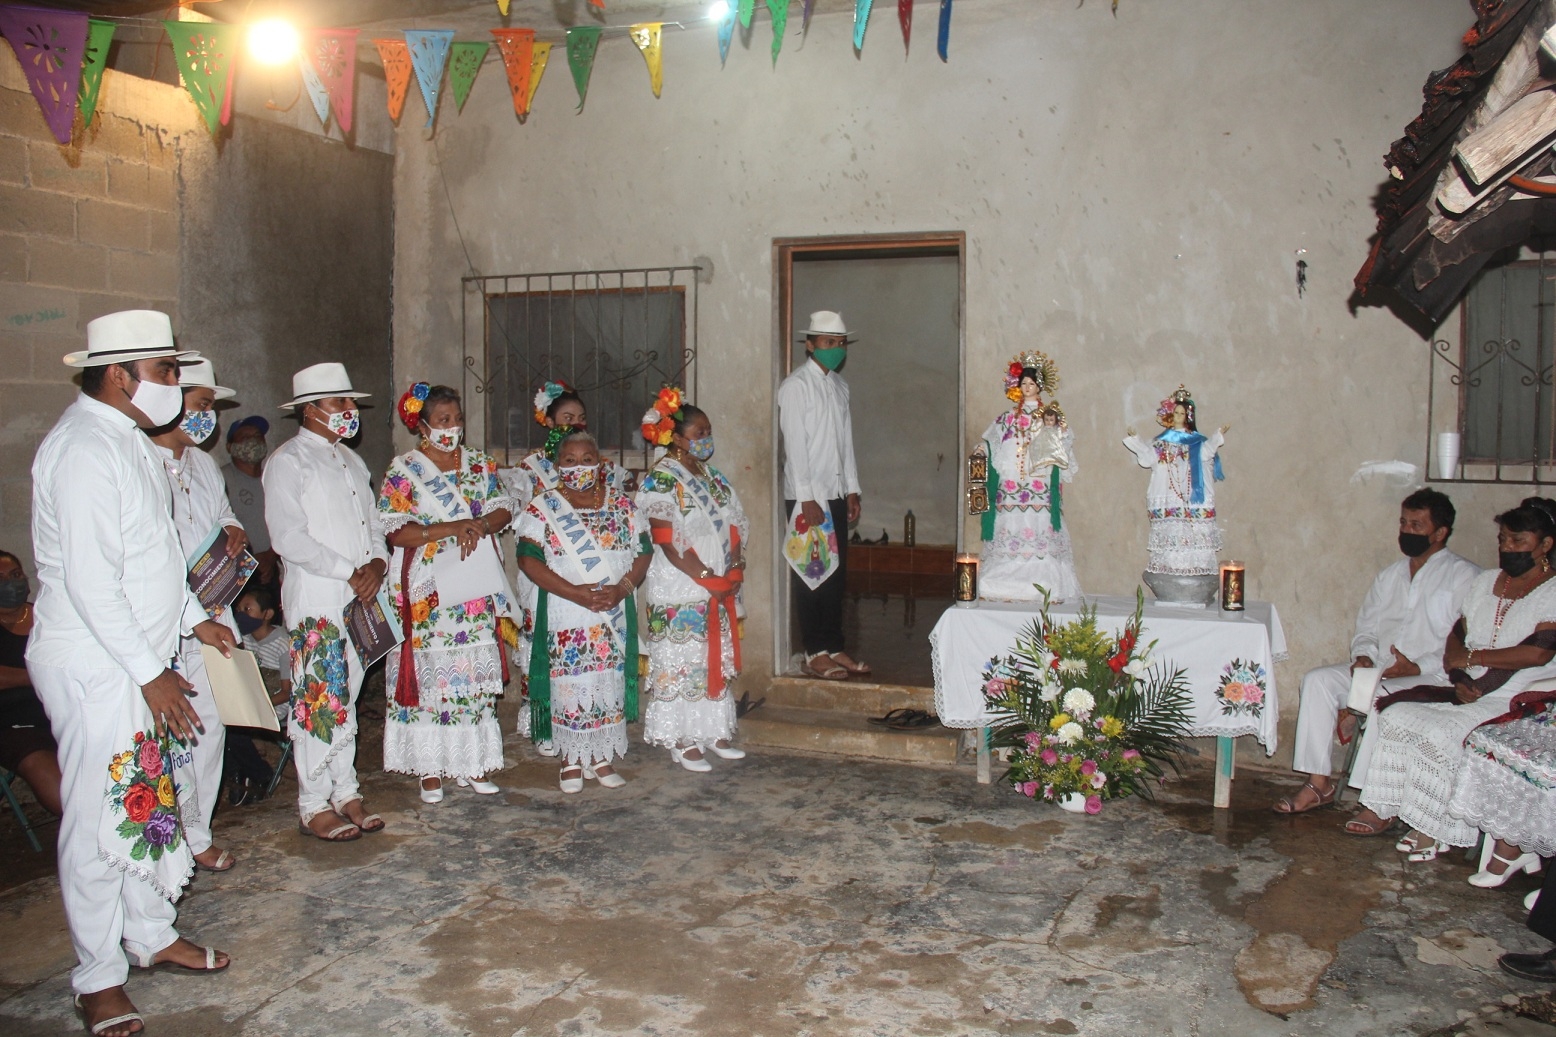 Los participante lucieron trajes típicos de la región para esta celebración religiosa en la Zona Maya de Quintana Roo